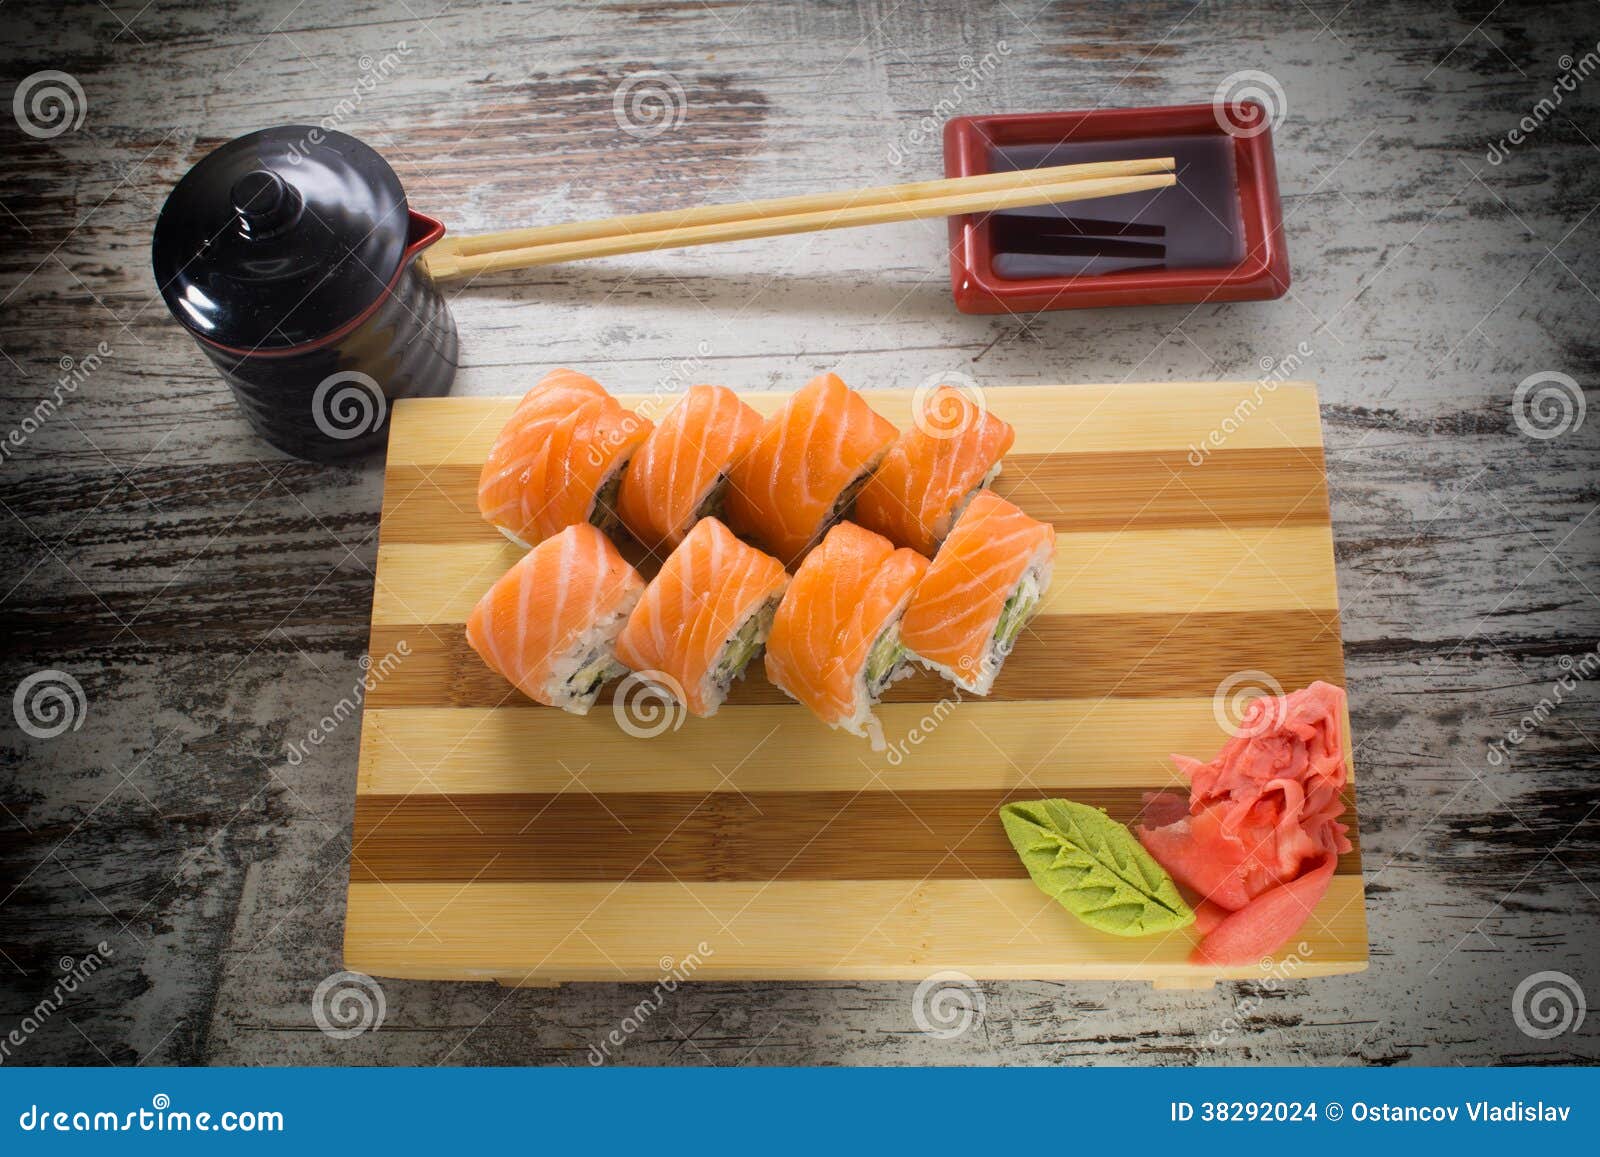 糙米寿司卷怎么做_糙米寿司卷的做法_豆果美食